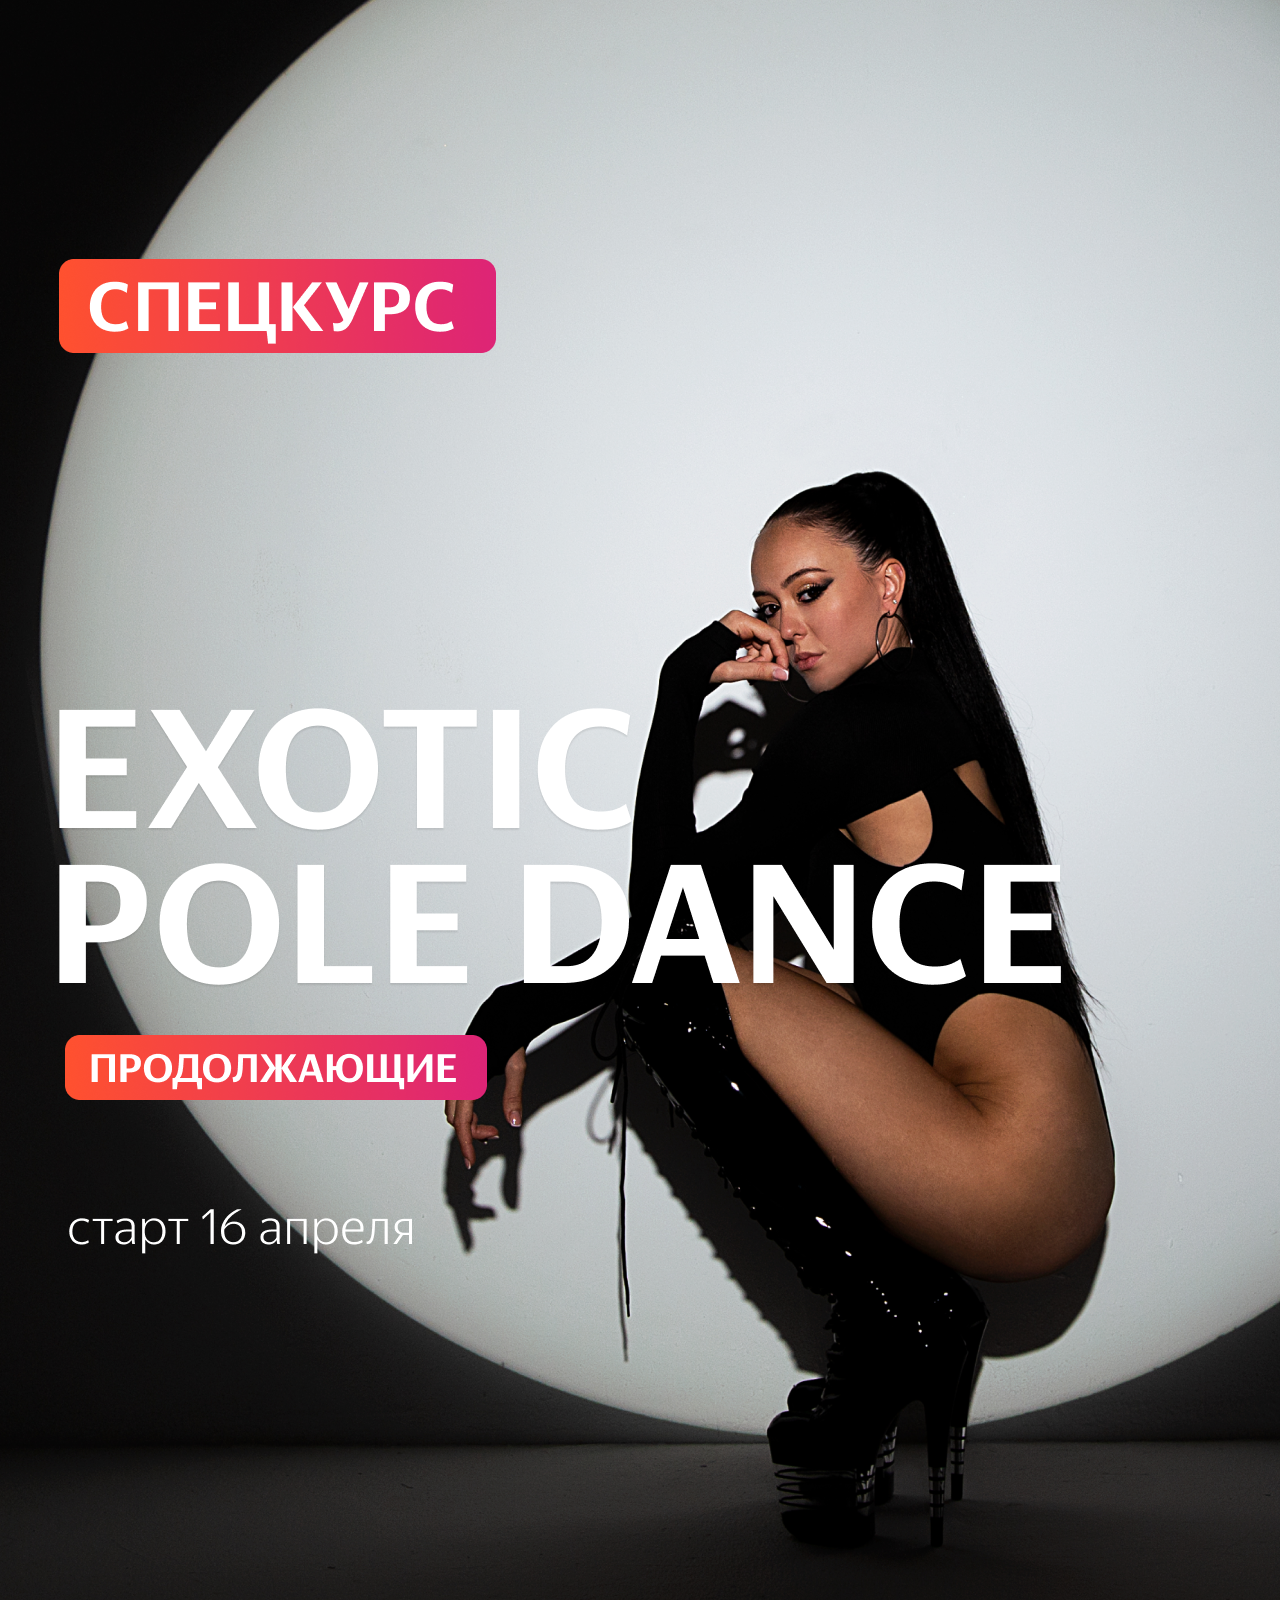 15 АПРЕЛЯ / Exotic Pole Dance продолжающие